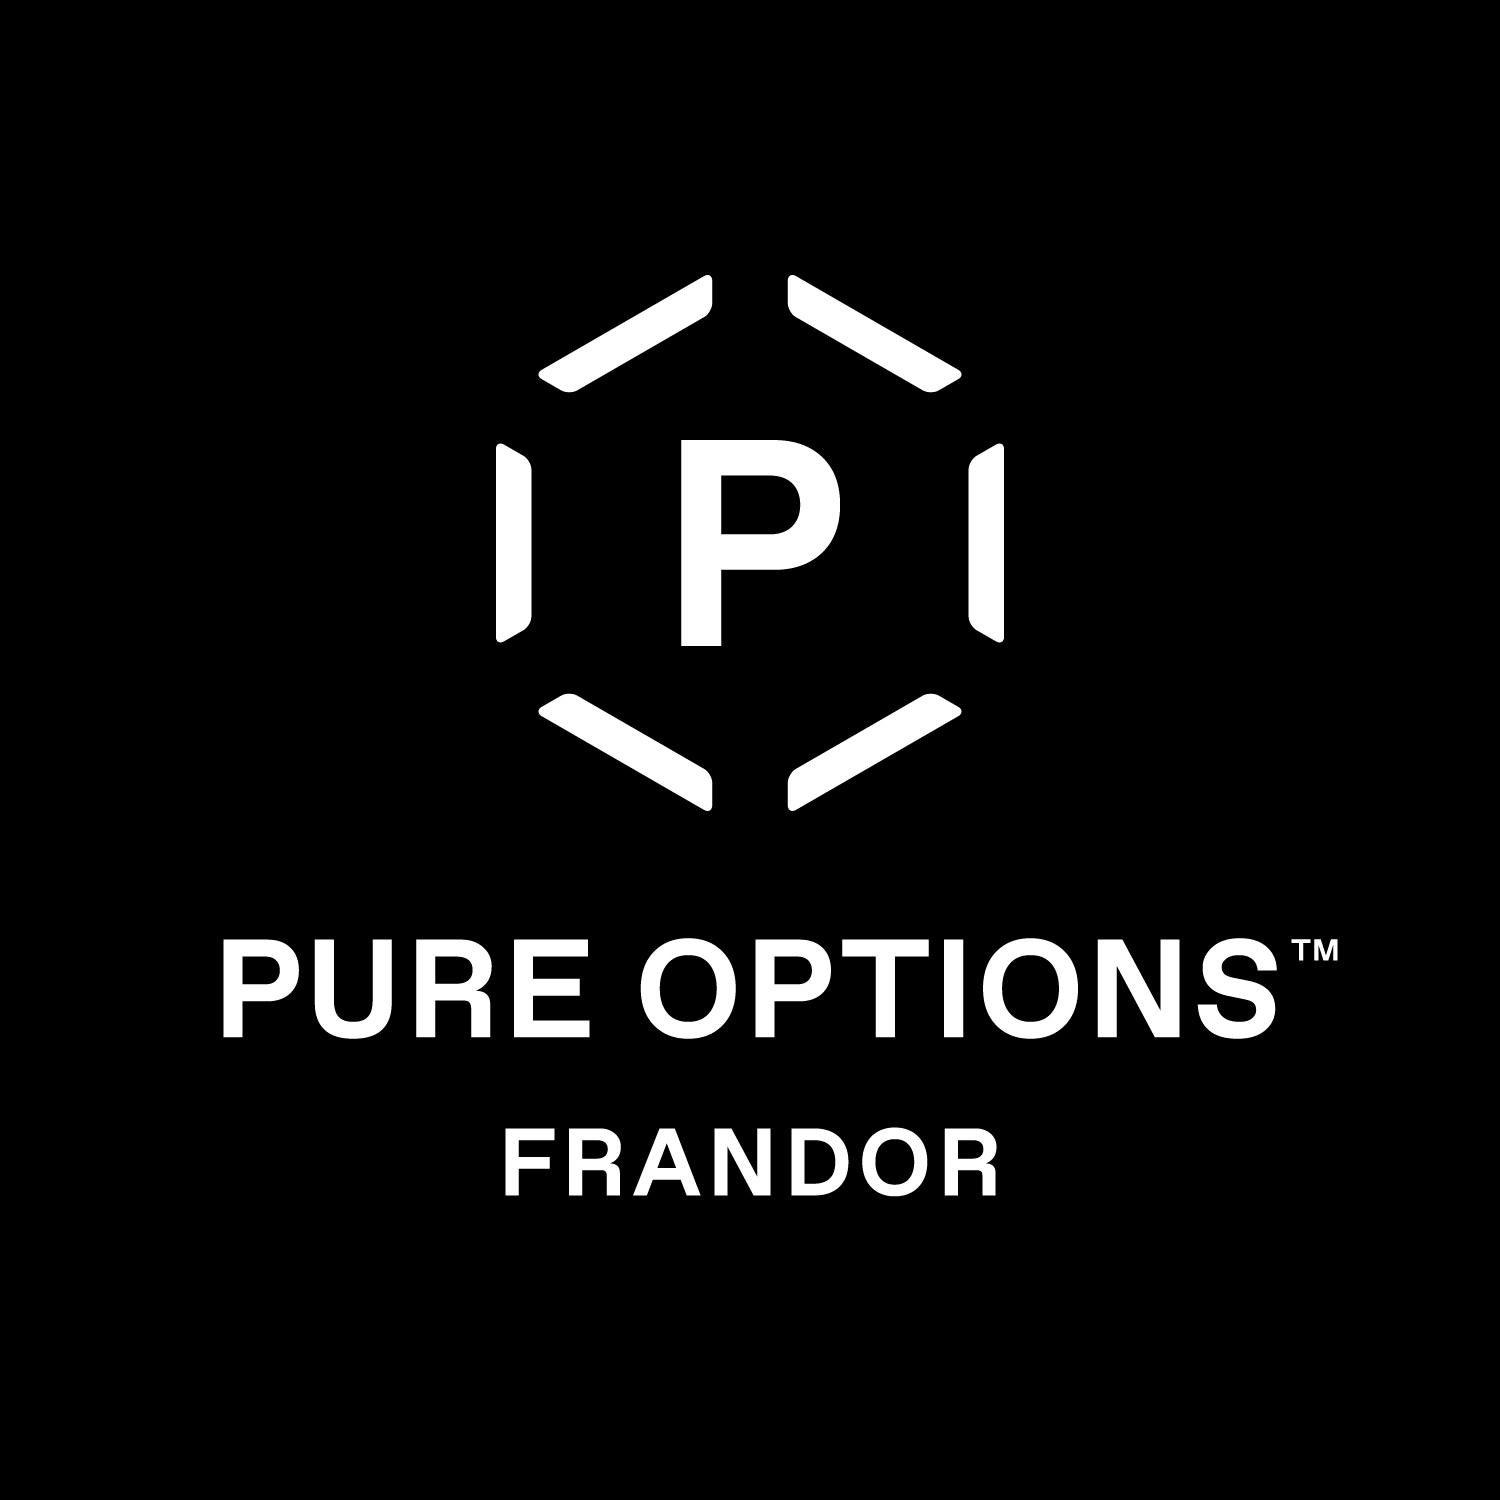 Pure Options Frandor logo